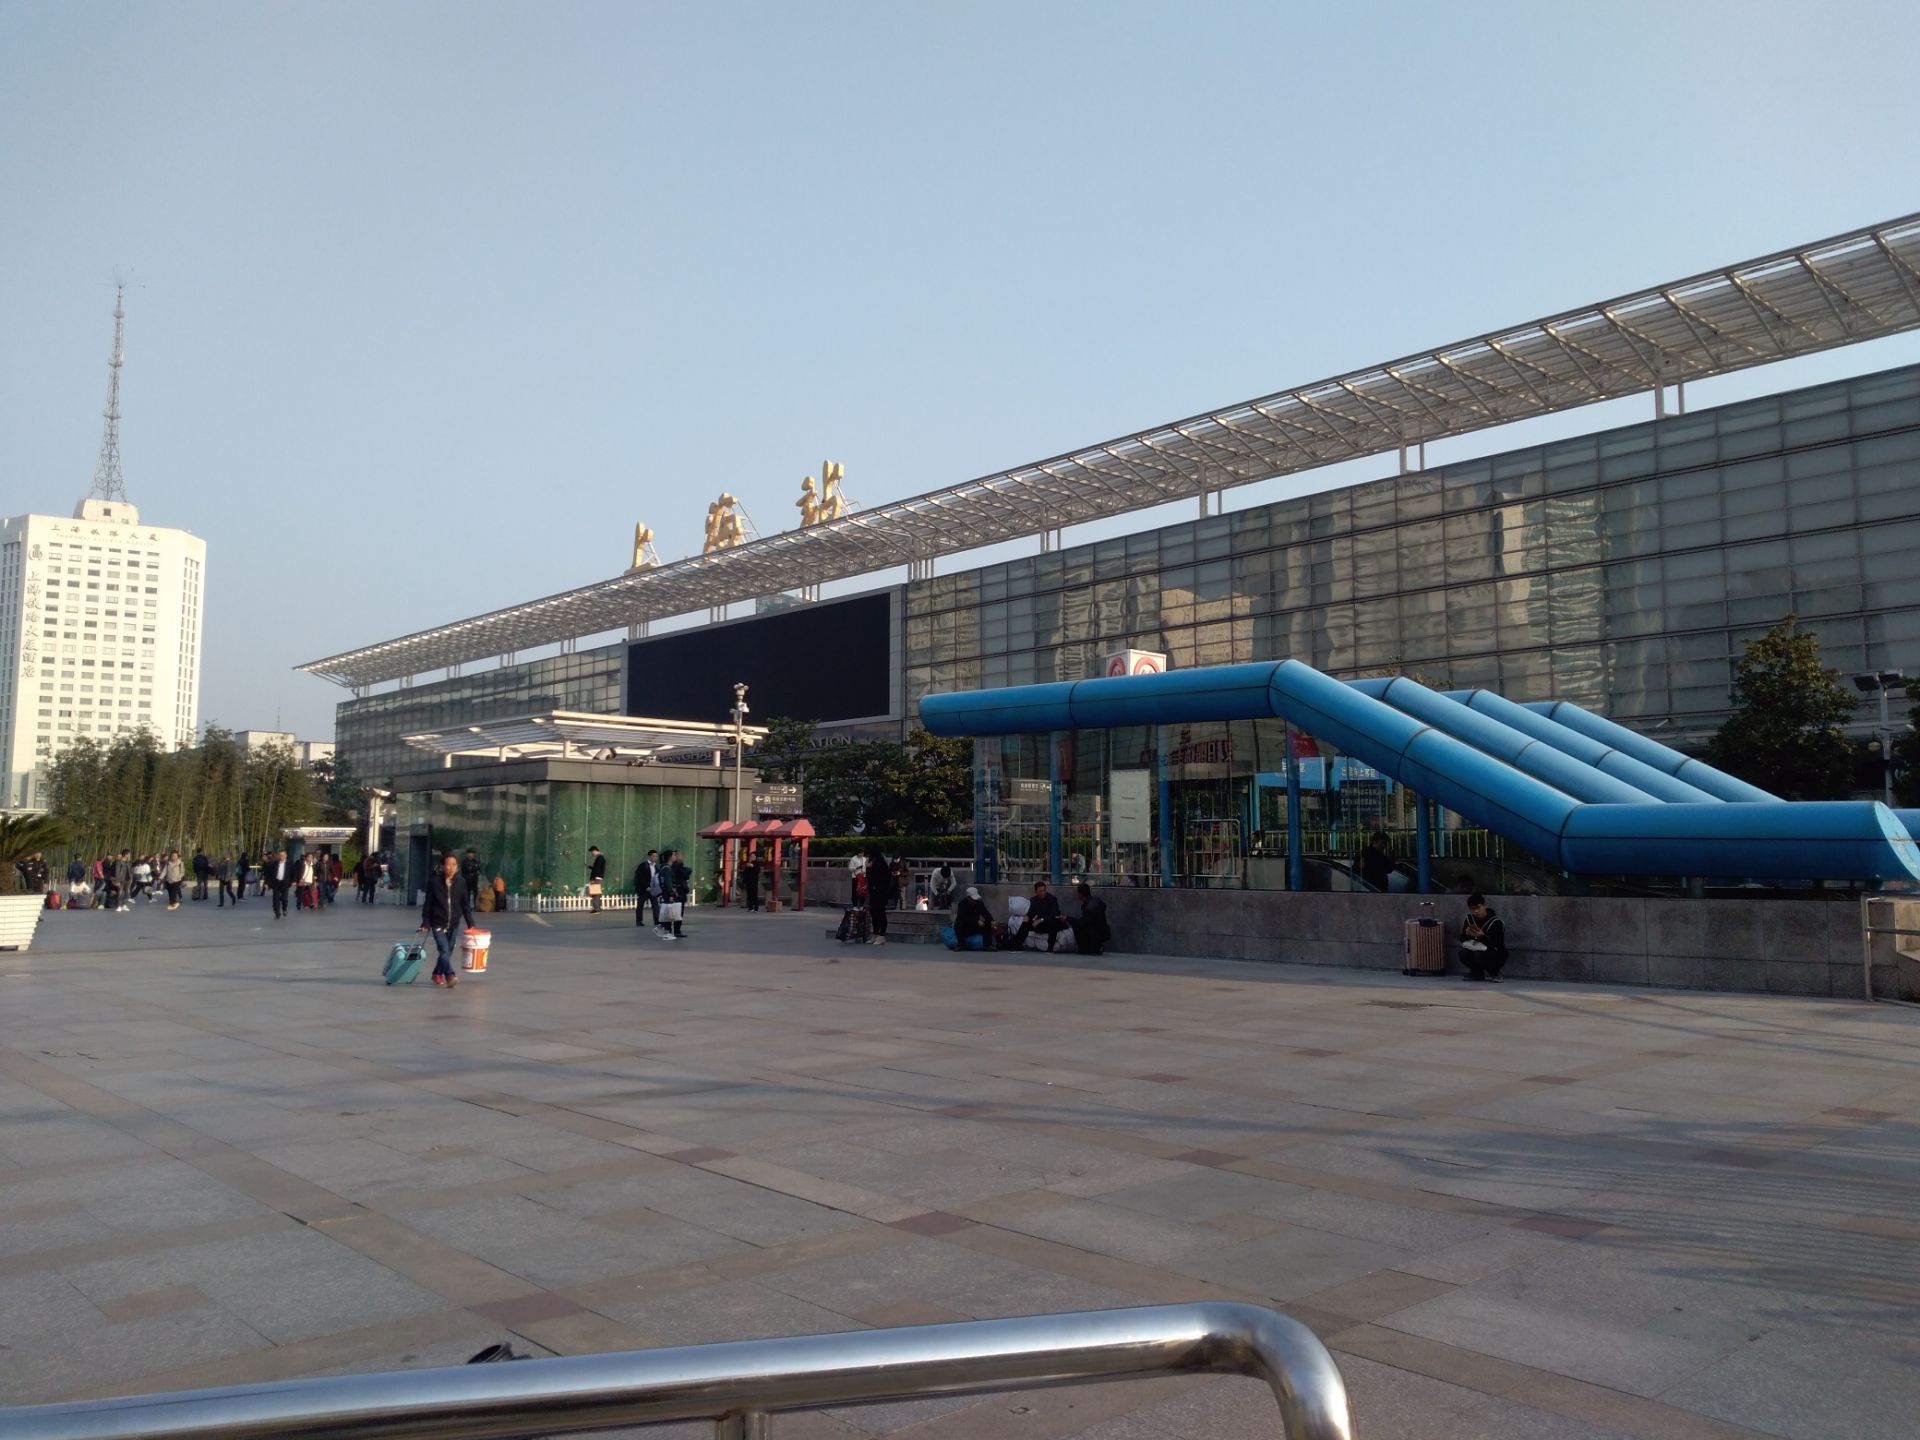 【携程攻略】景点,上海站一南广场是上海站进出的一个主要场所,相对北